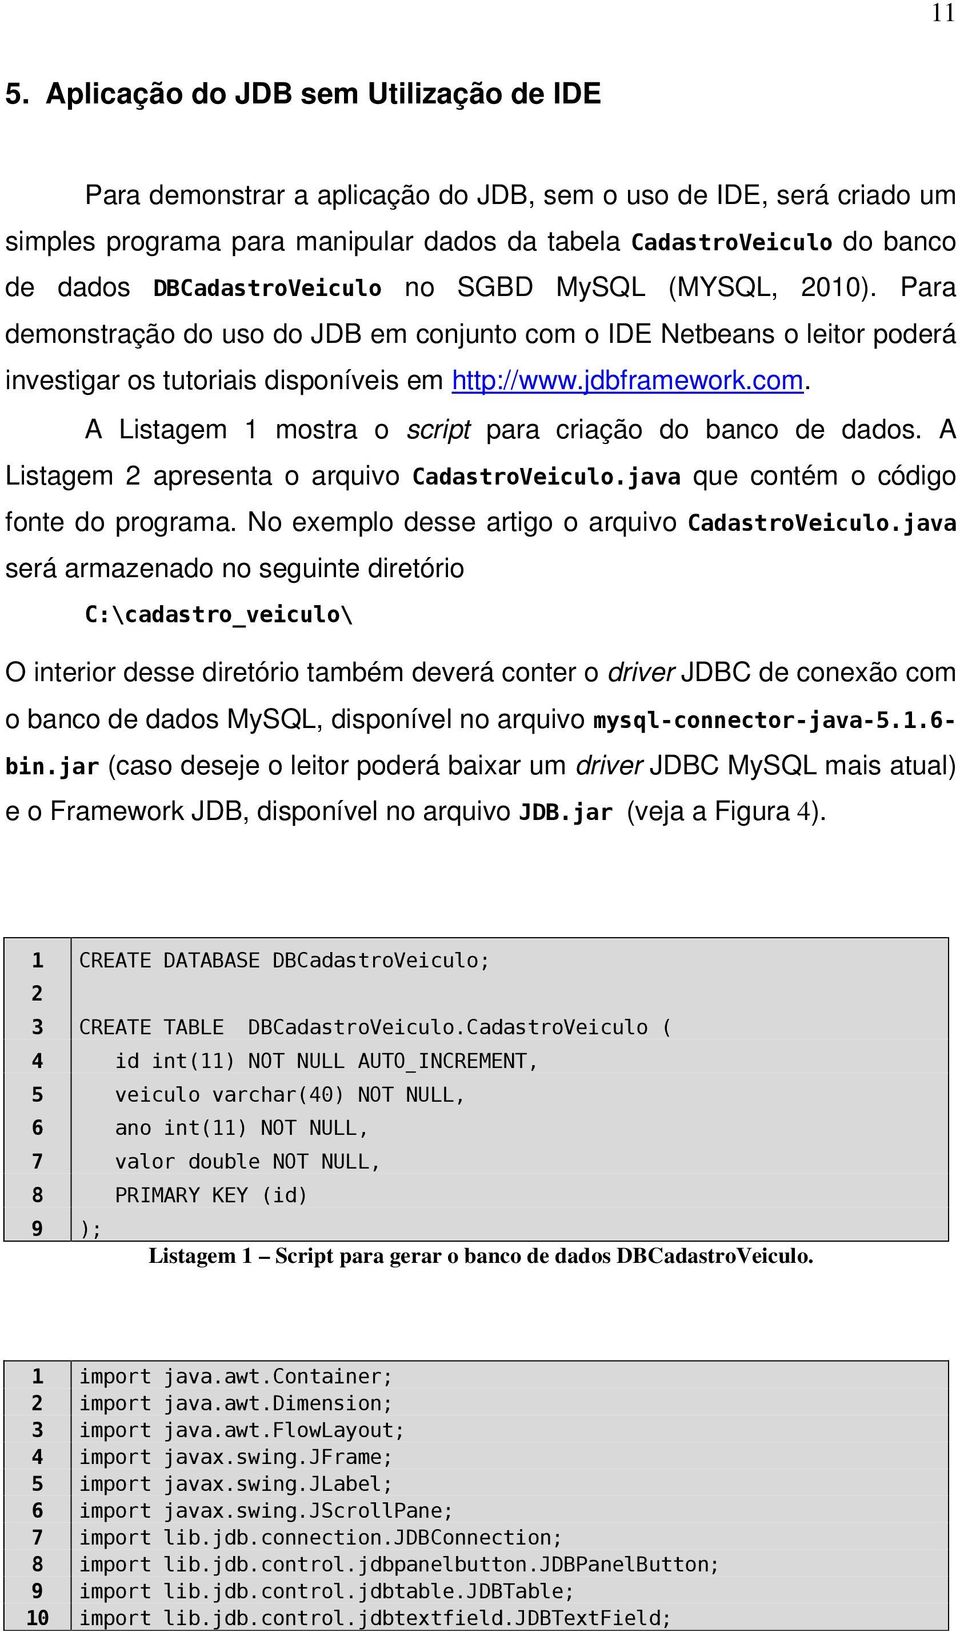 A Listagem 2 apresenta o arquivo CadastroVeiculo.java que contém o código fonte do programa. No exemplo desse artigo o arquivo CadastroVeiculo.